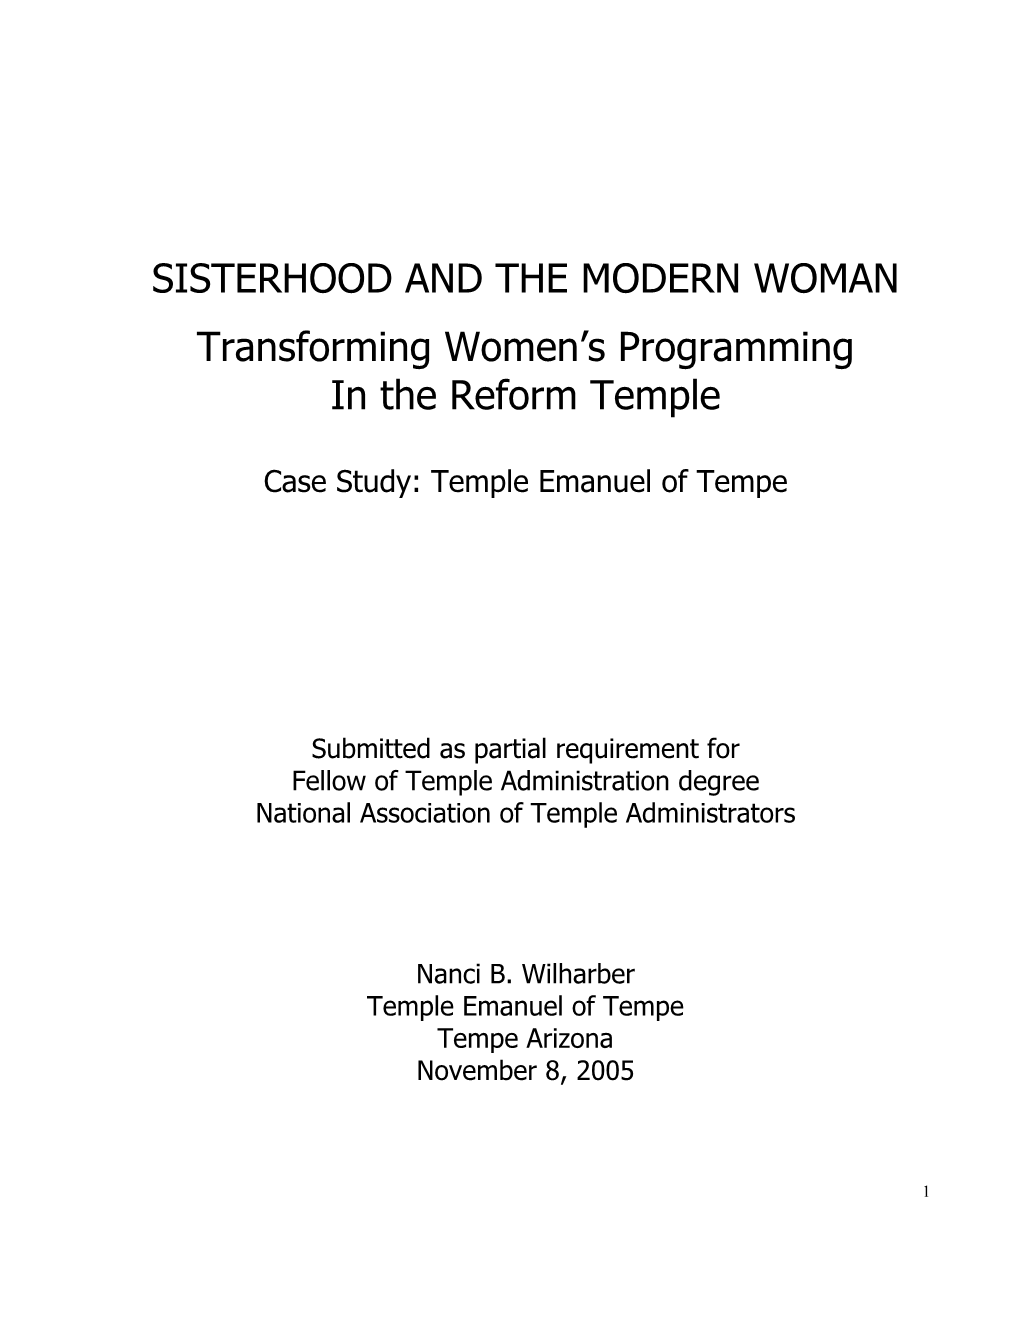 Sisterhood and the Modern Woman